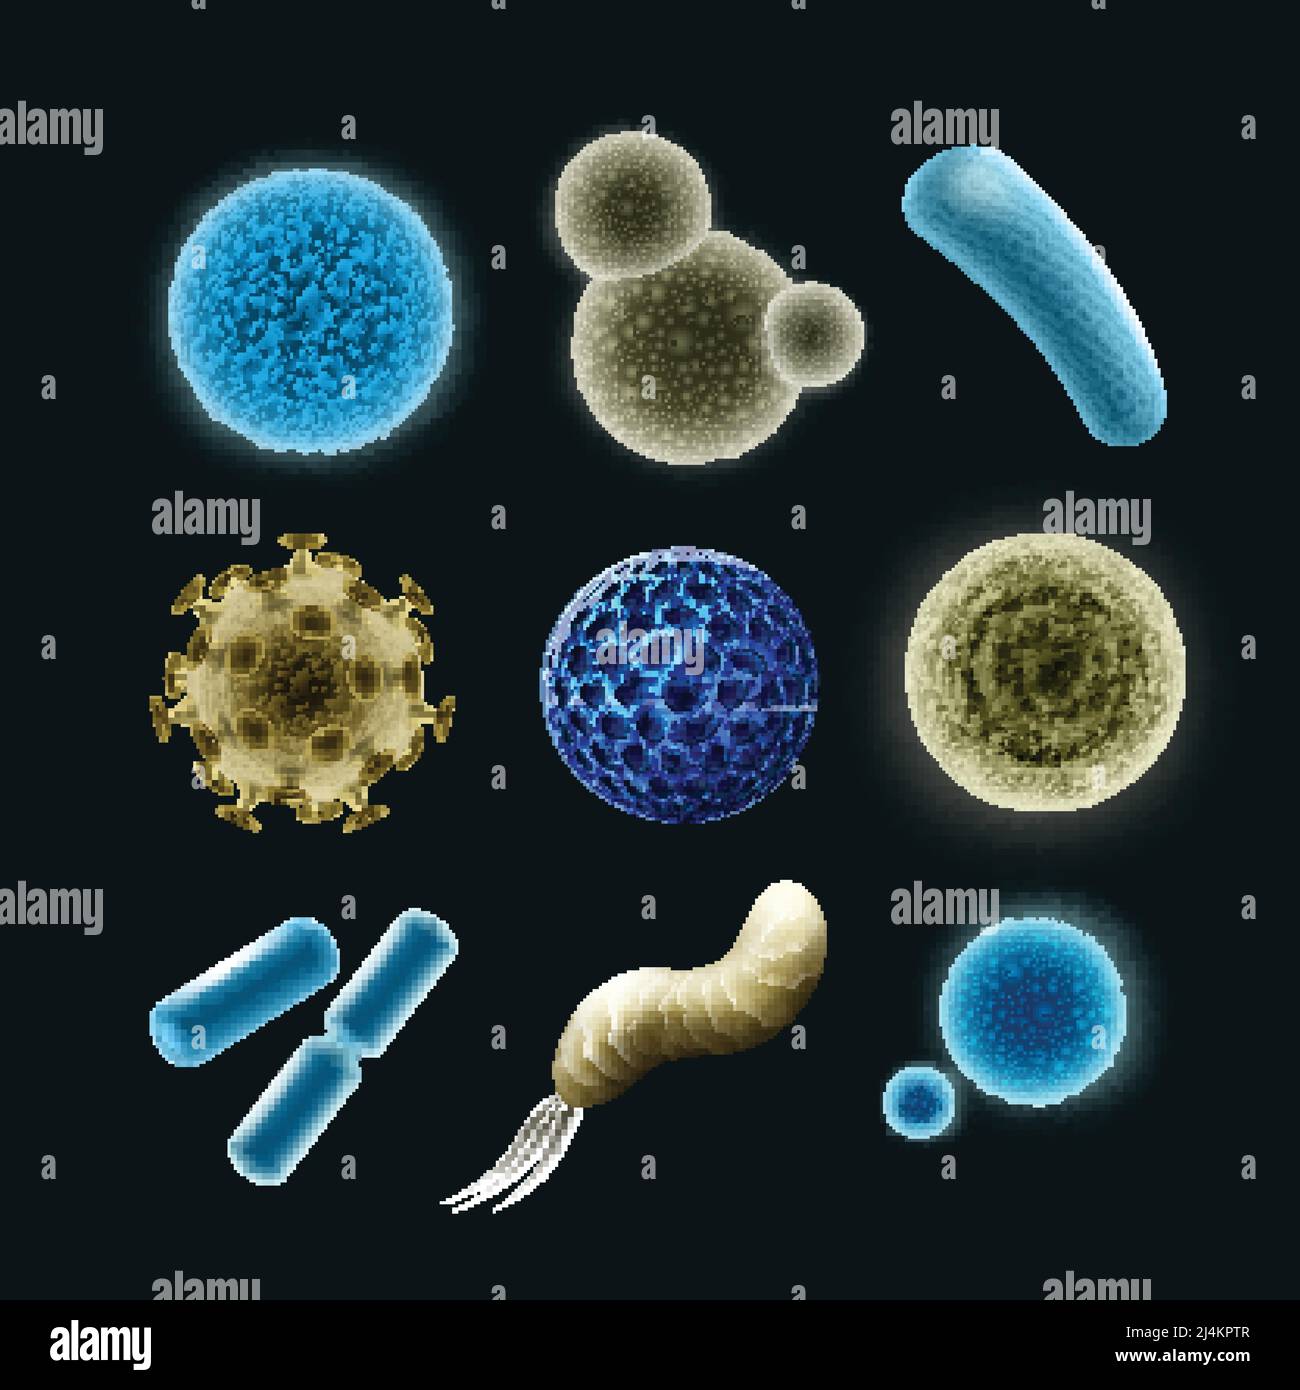 Vektor-Set von verschiedenen Bakterien und Viruszellen Kokken, Spirilla, Bazillen, Diplobacilli auf dunklem Hintergrund isoliert Stock Vektor